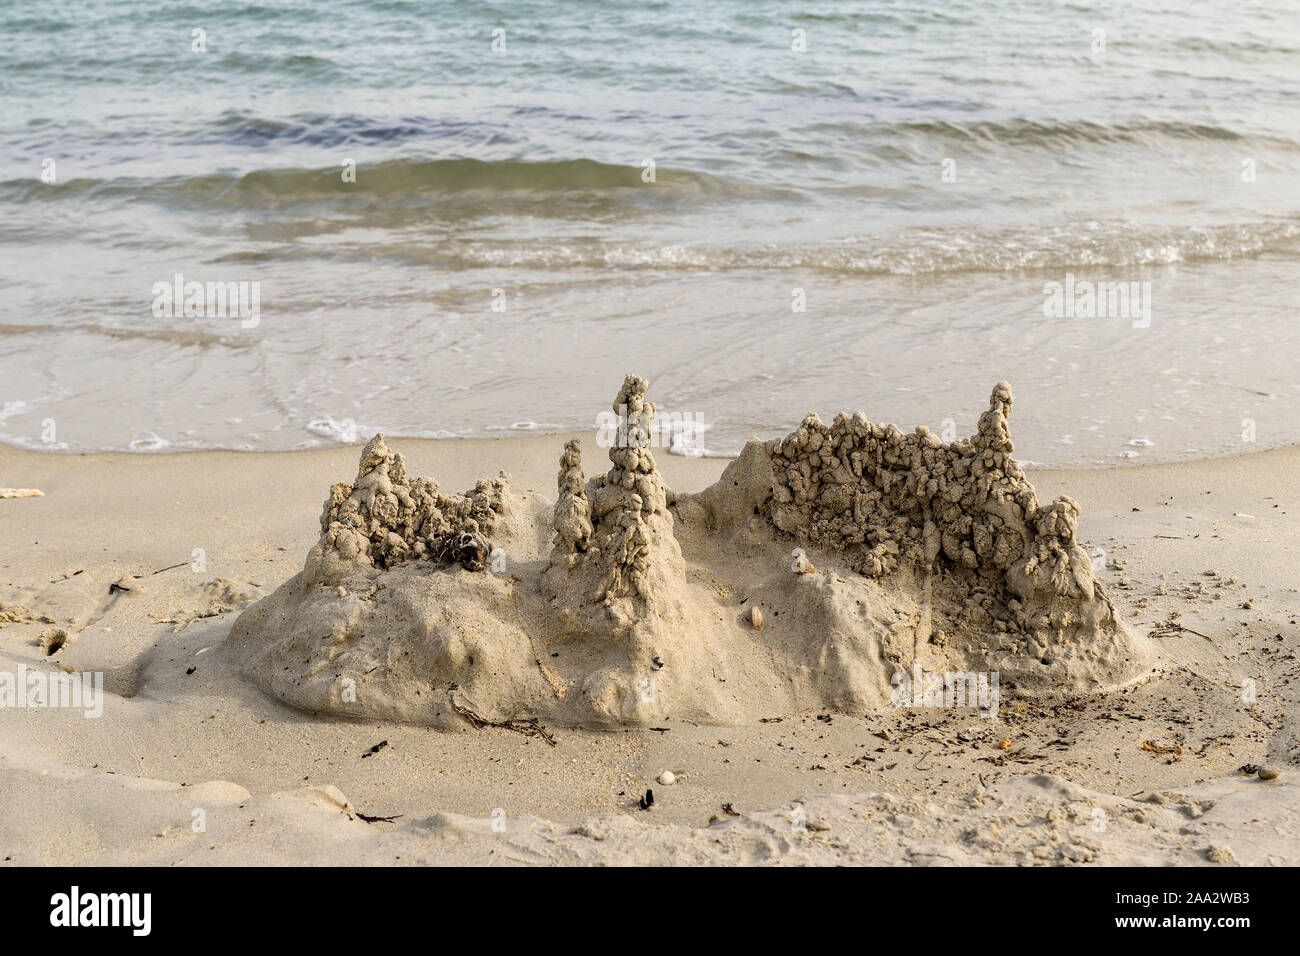 Château de sable sur la plage, les hommes du beach à Carnac, Bretagne, France Banque D'Images